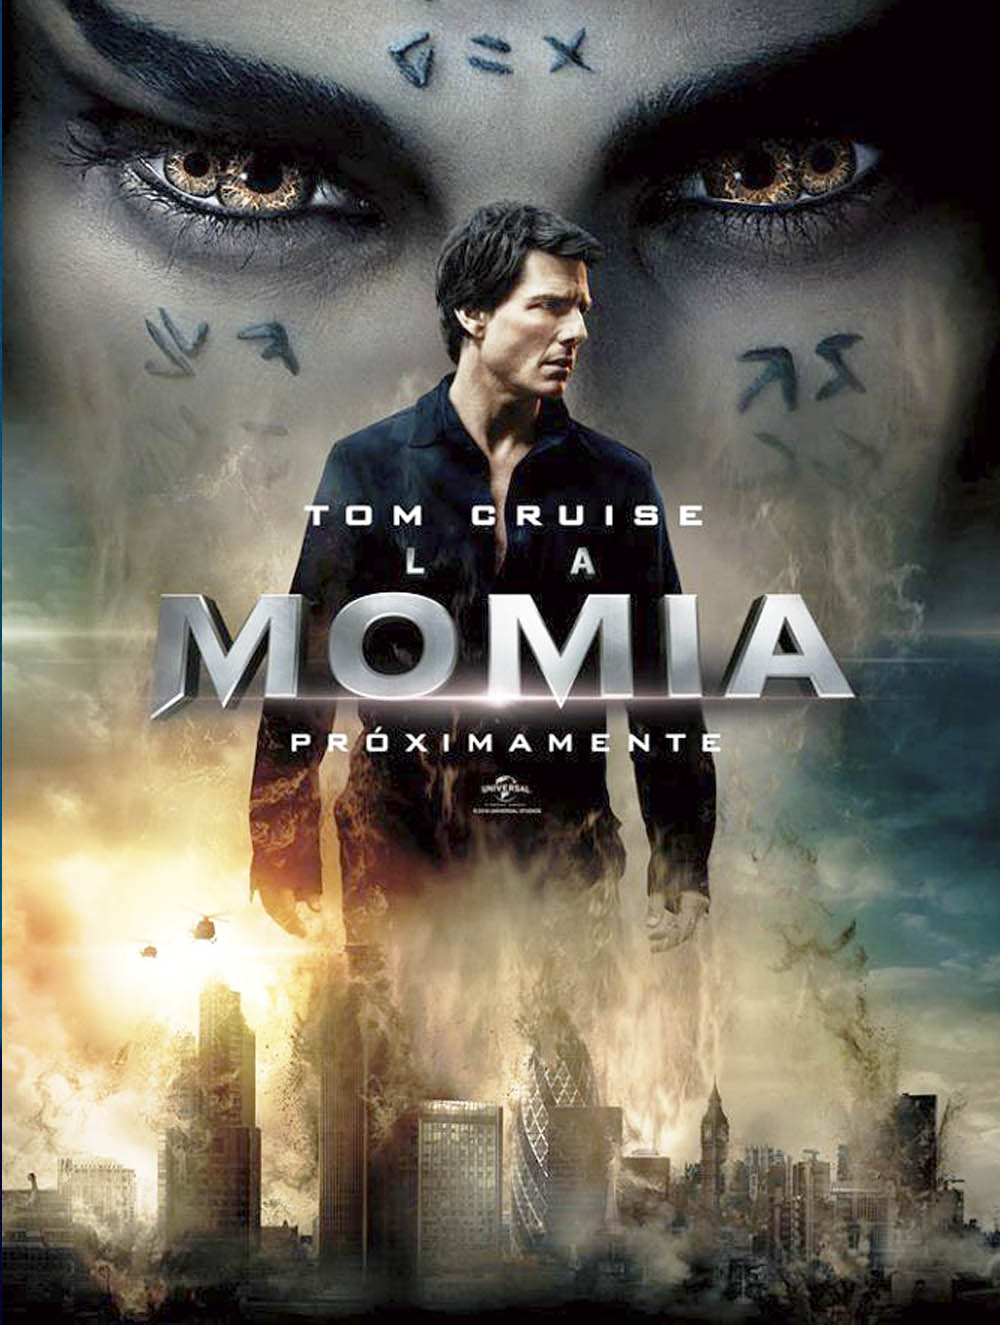 La Momia (2017) en Español Latino gratis - Descargar 